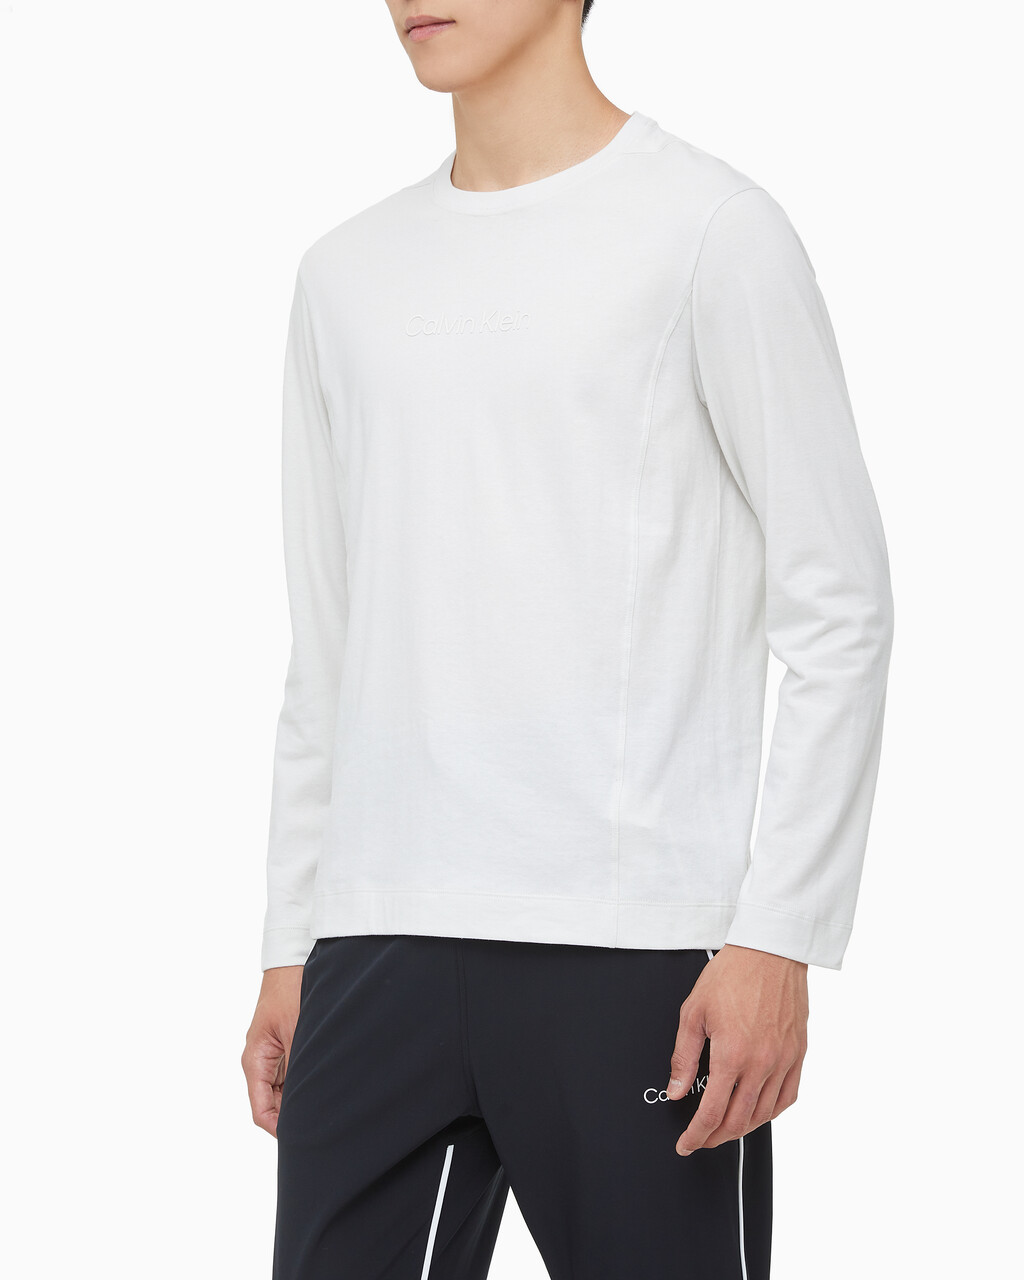 Buy 남성 레귤러핏 롱 슬리브 티셔츠 in color WHITE